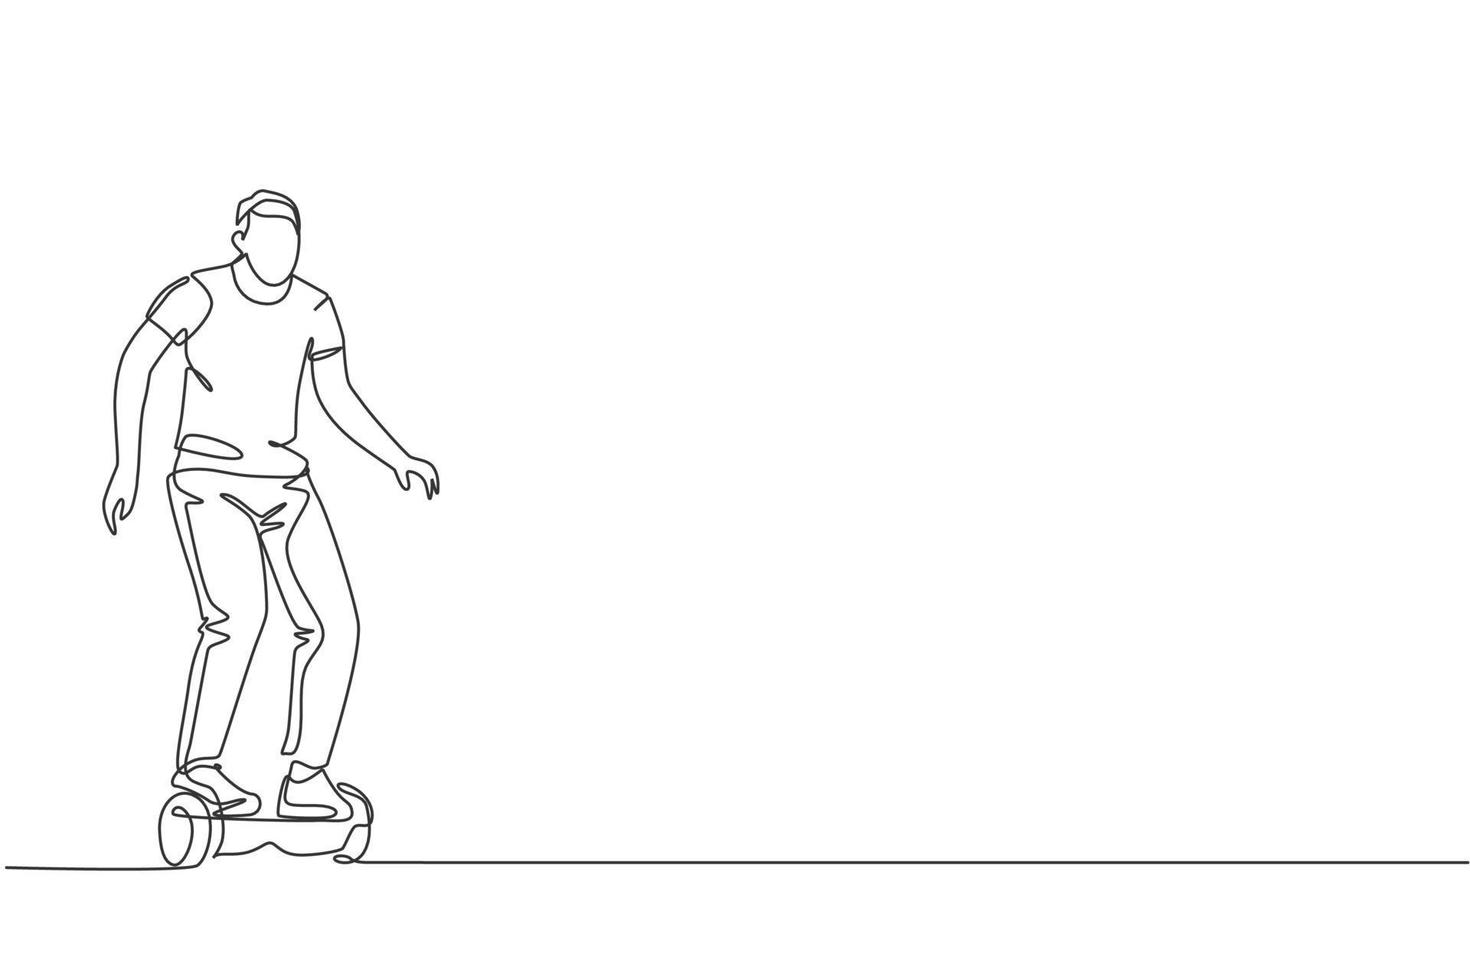 dibujo de una sola línea de hombre joven enérgico montando patineta en la ilustración de vector de parque de la ciudad. transporte futuro del gyroscooter. concepto de deporte de estilo de vida saludable. diseño moderno de dibujo de línea continua